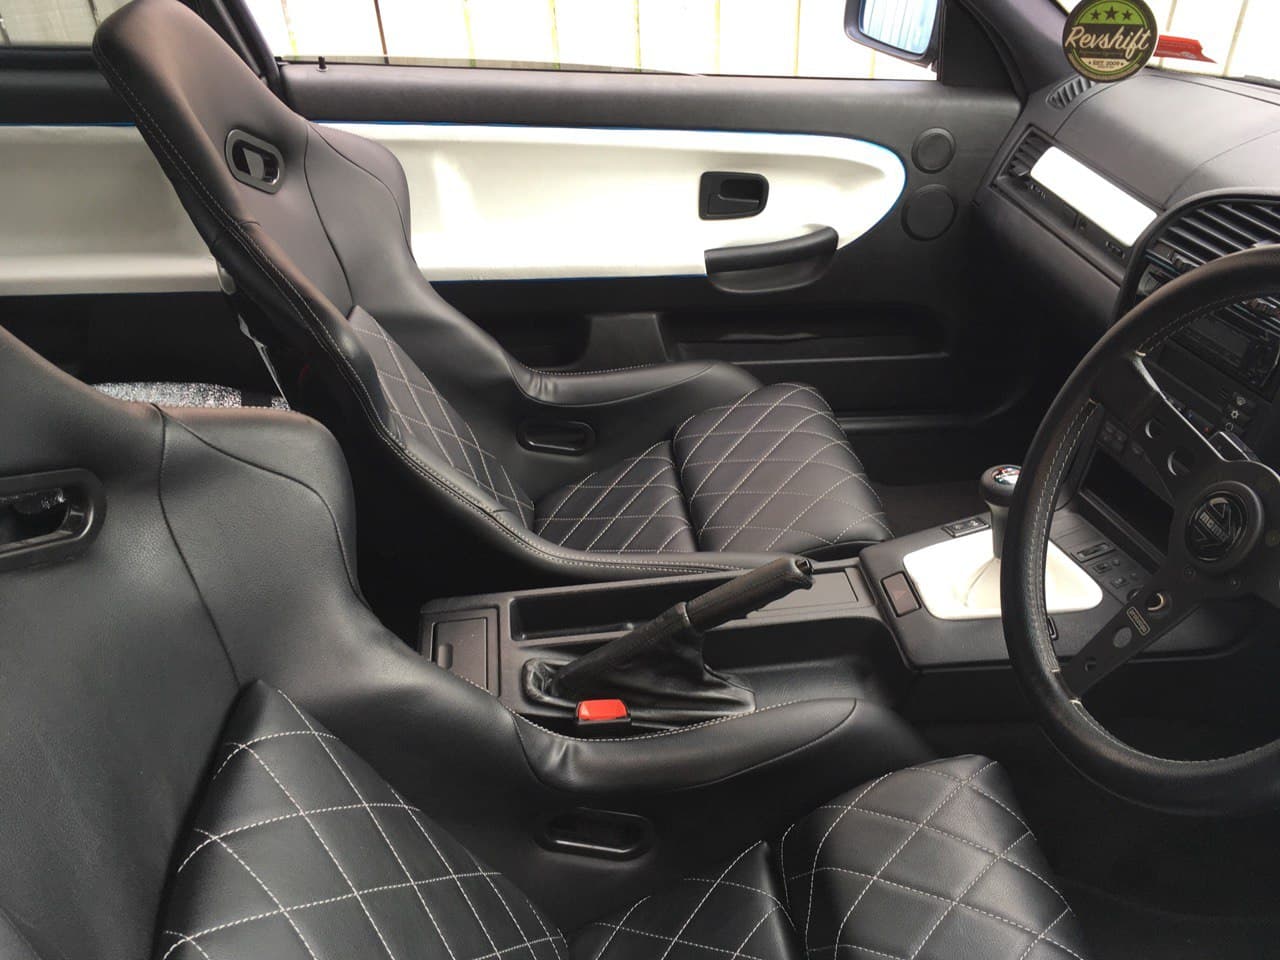 BMW E36 328i Interior